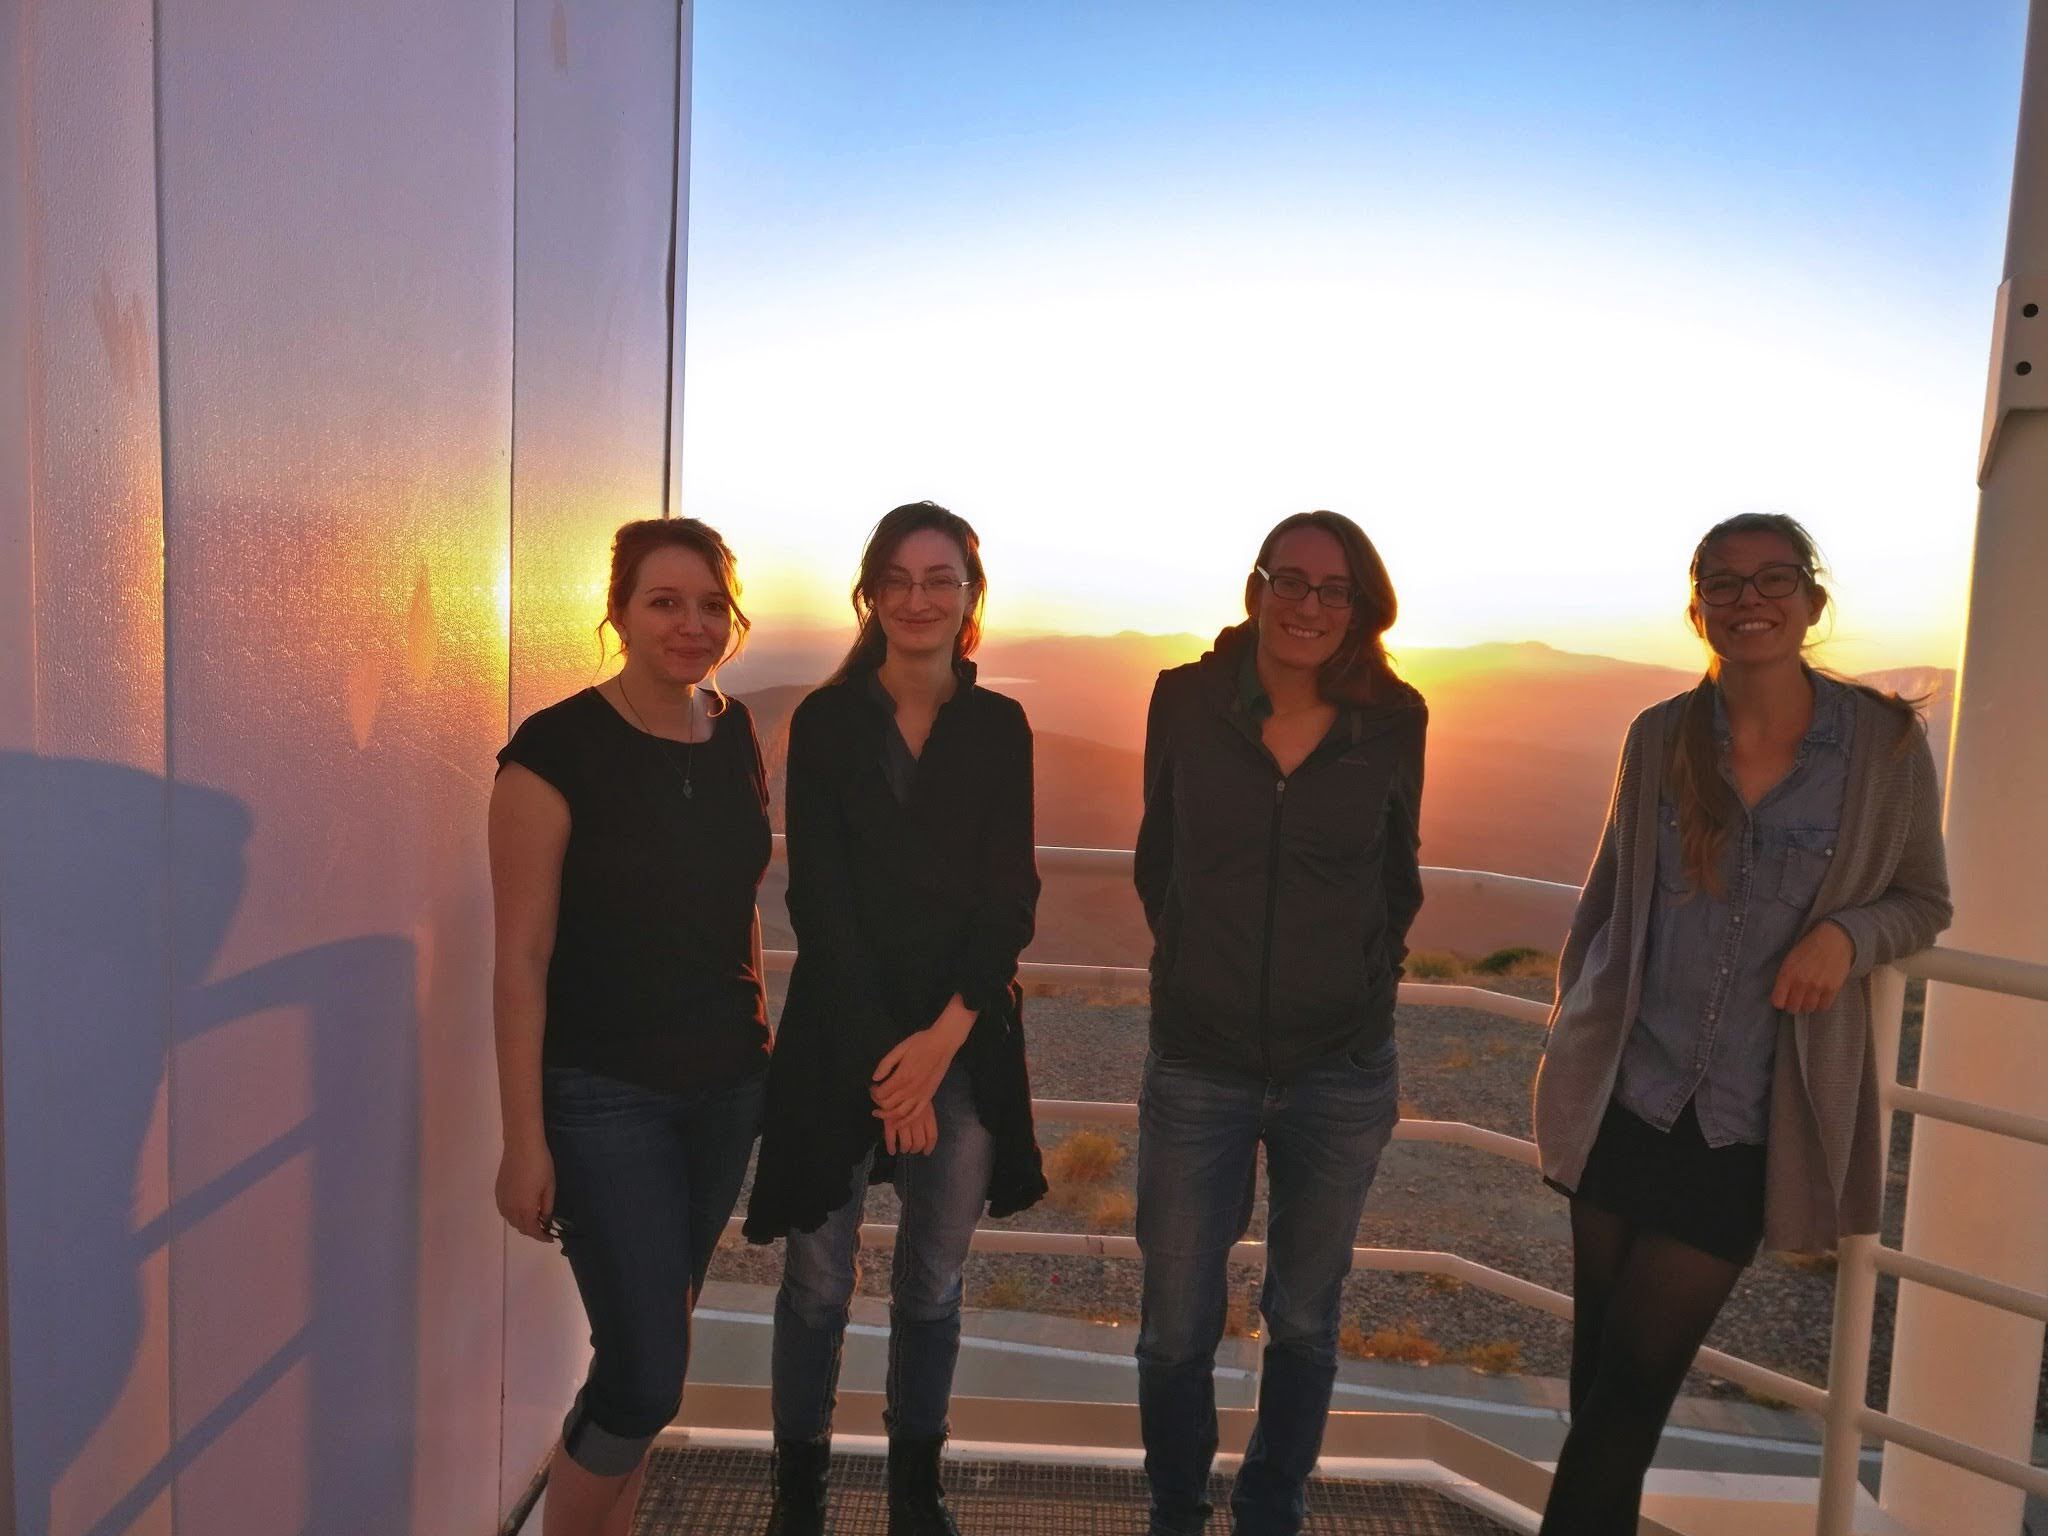 Le autrici dello studio presso i telescopi Magellano all’Osservatorio Las Campanas, in Cile: Bethany Ludwig, Anna O’Grady, Maria Drout e Ylva Götberg. Crediti: Y. Götberg